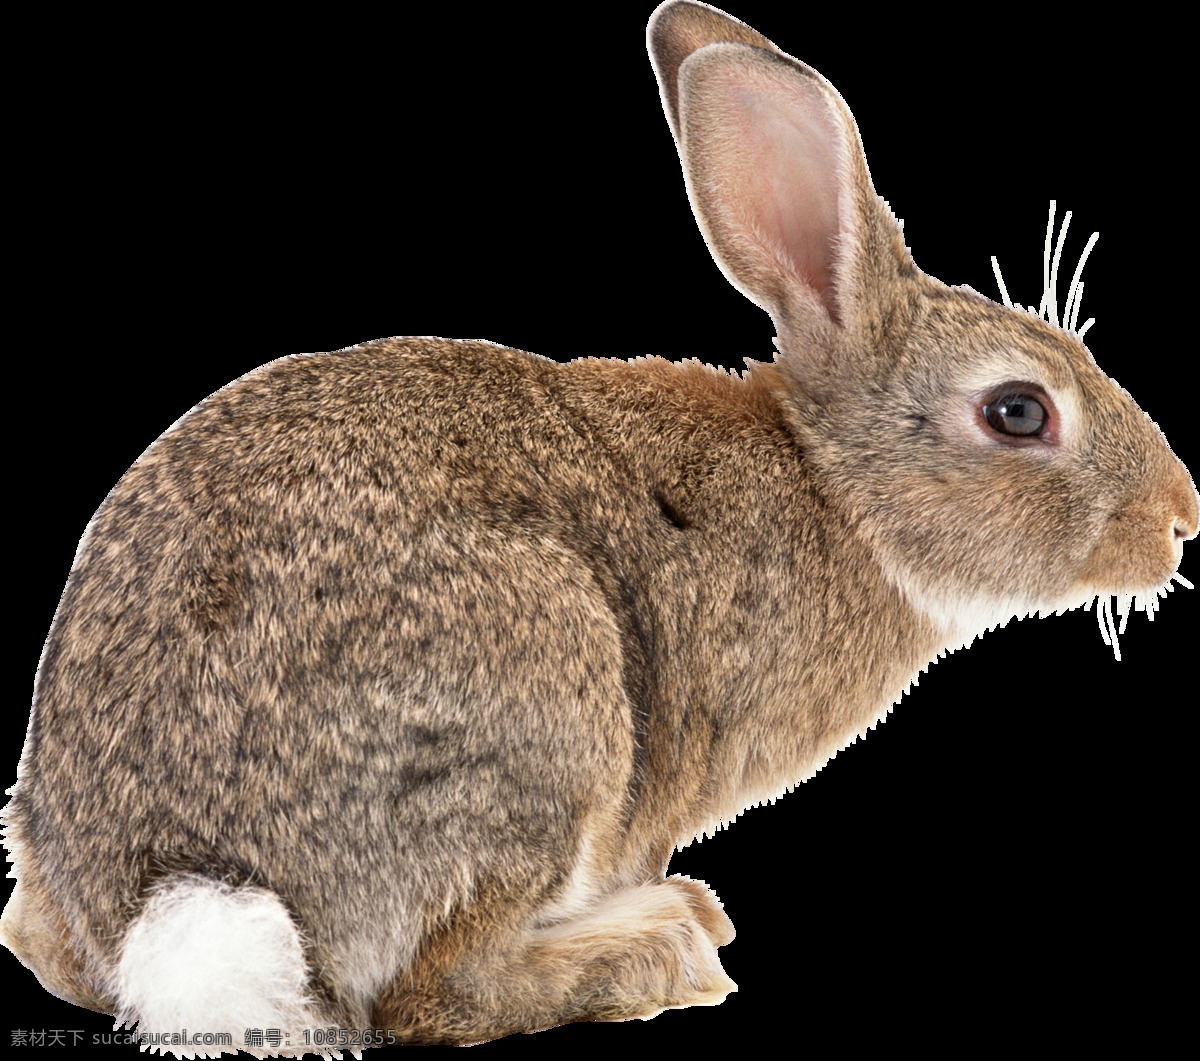 可爱 动物 兔子 图案 可爱的兔子 可爱小兔子 小兔子 小白兔 萌宠 小宝贝 小可爱 灰兔 肉兔 野兔 兔肉 家养宠物 家兔 垂耳兔 中毛兔 黄色兔子 小动物 宠物 荷兰兔 宠物兔子 复活节 可爱兔子 黑兔 大白兔 生物世界